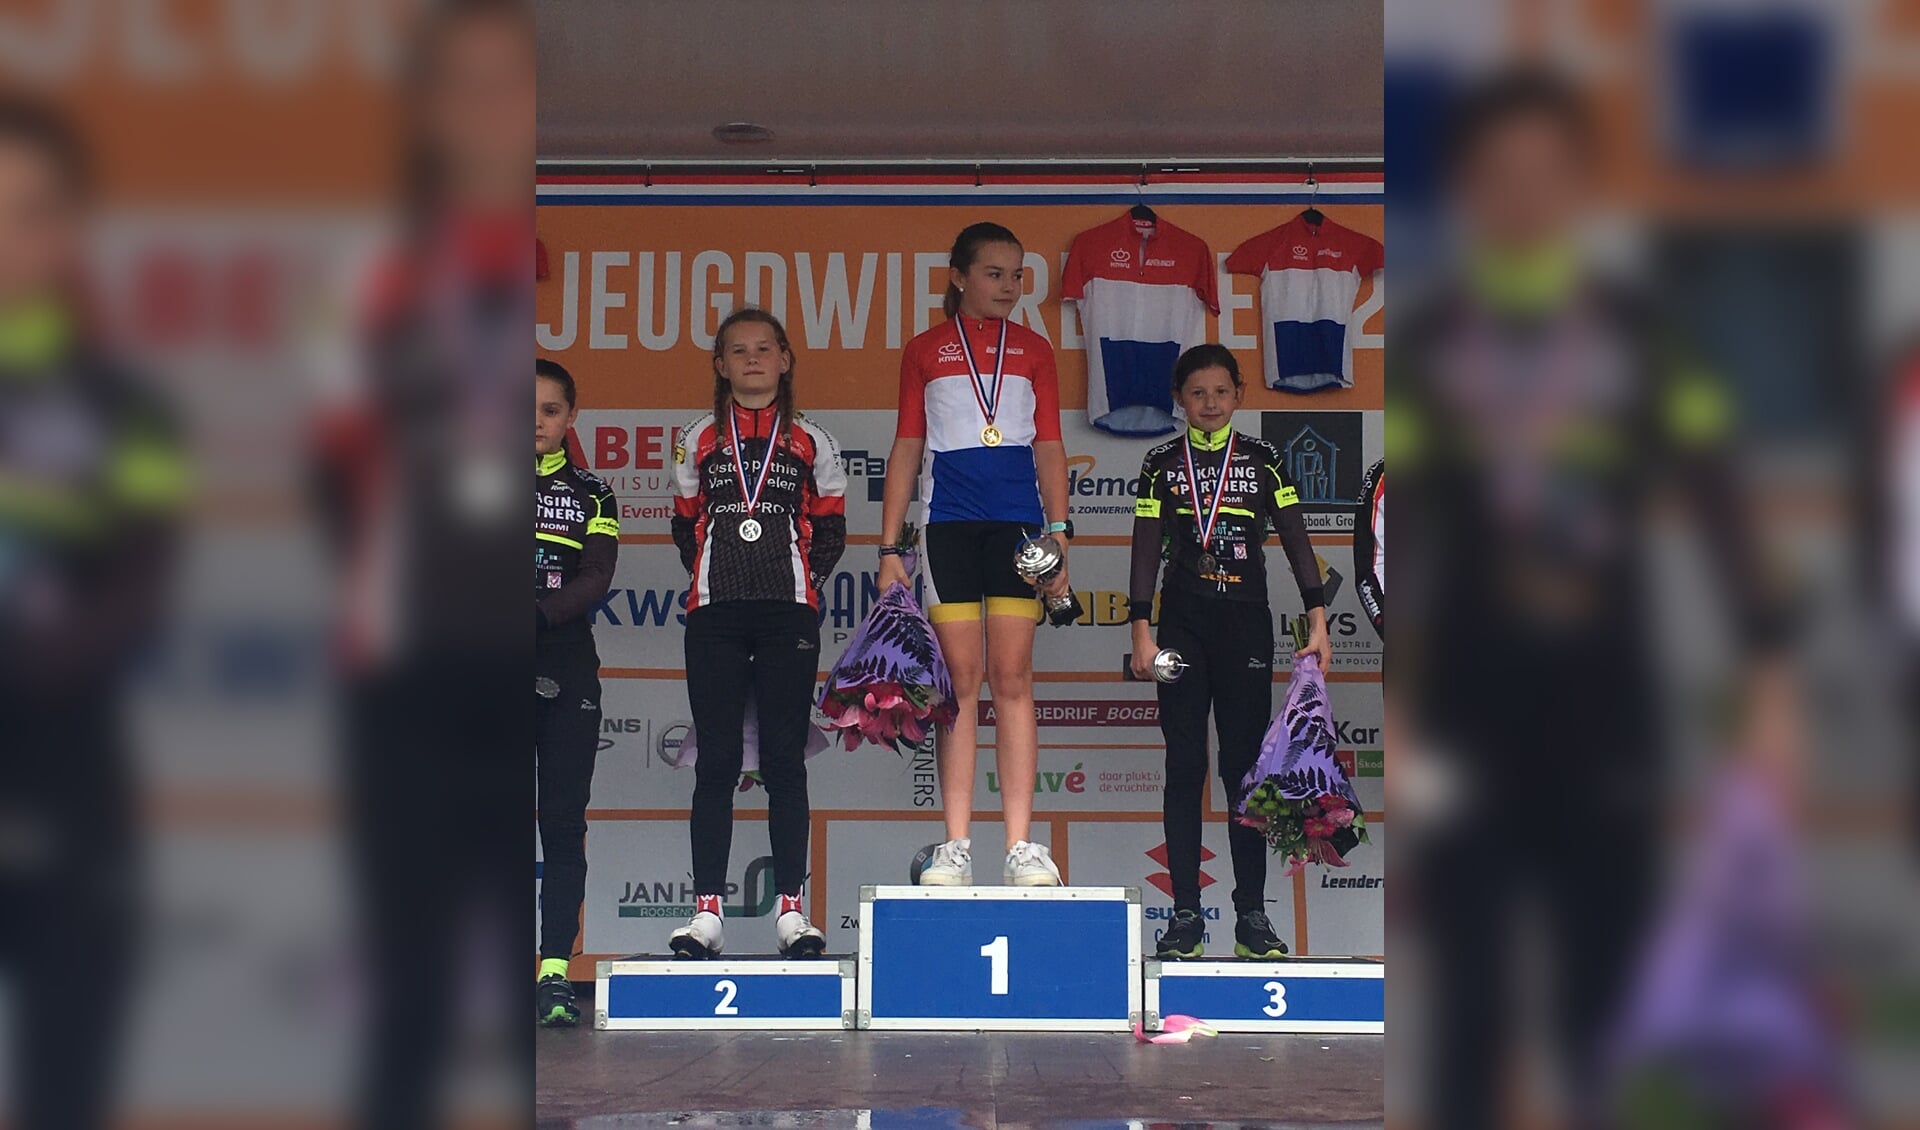 Megan Arens Nederlands Kampioen Meisjes 11 jaar.